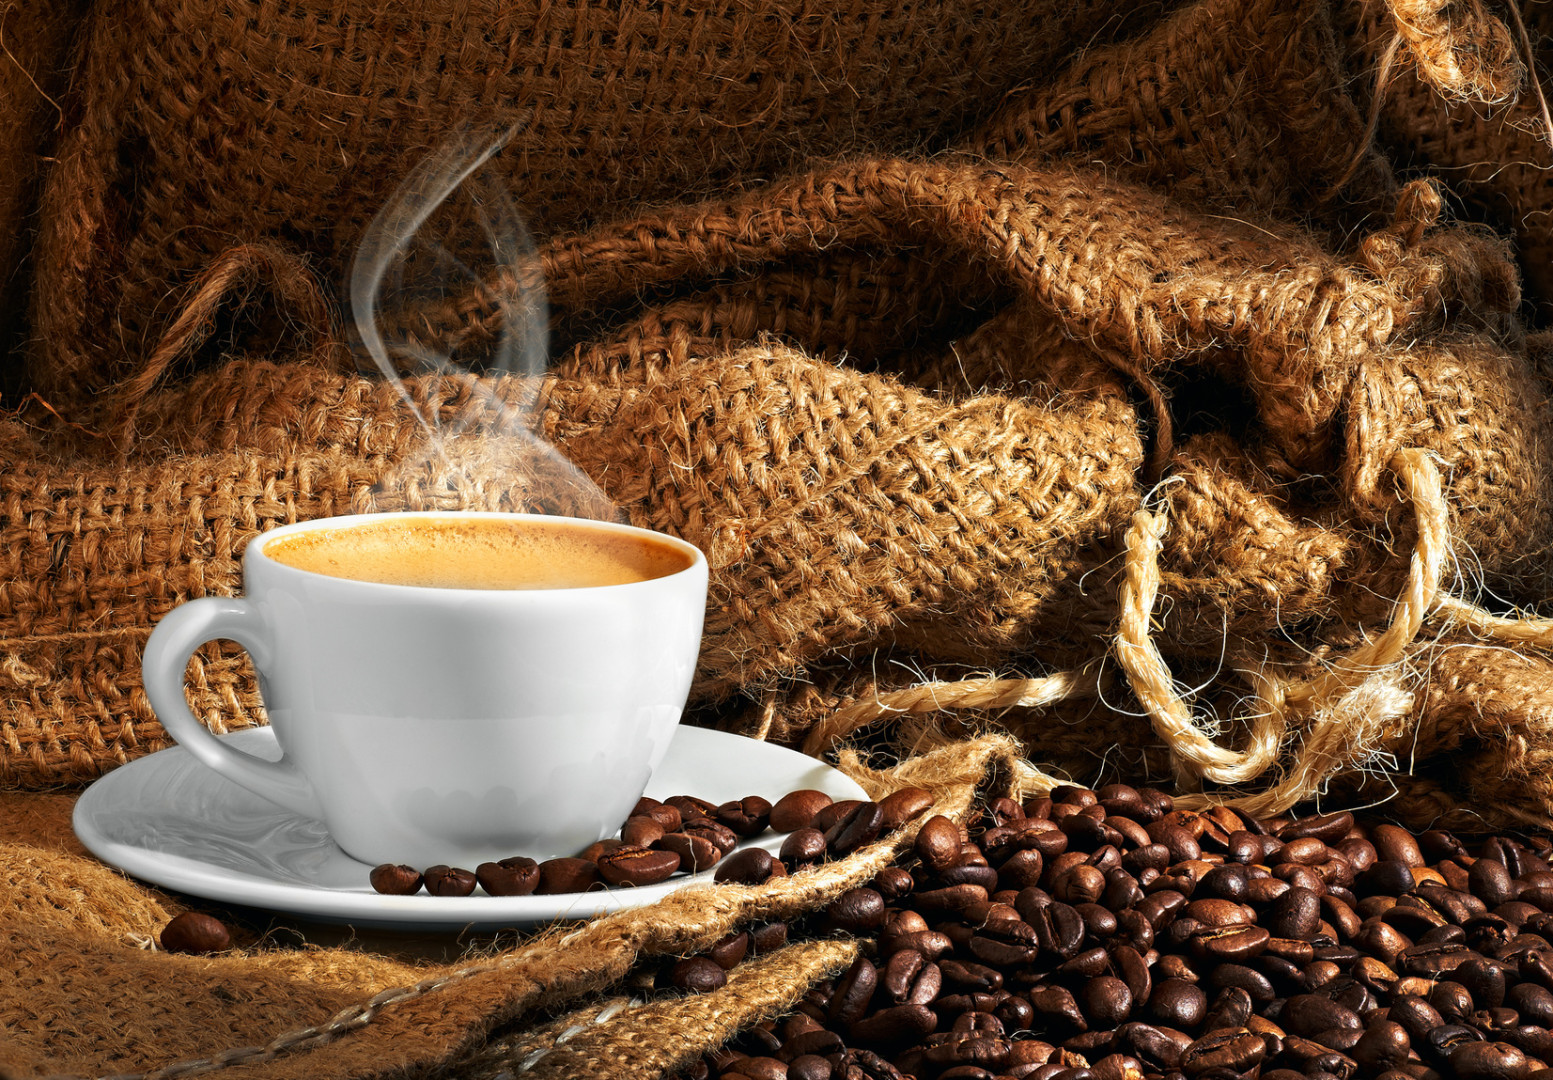 Nescafe budzi nie tylko kawą Nescafe mediarunnescafe